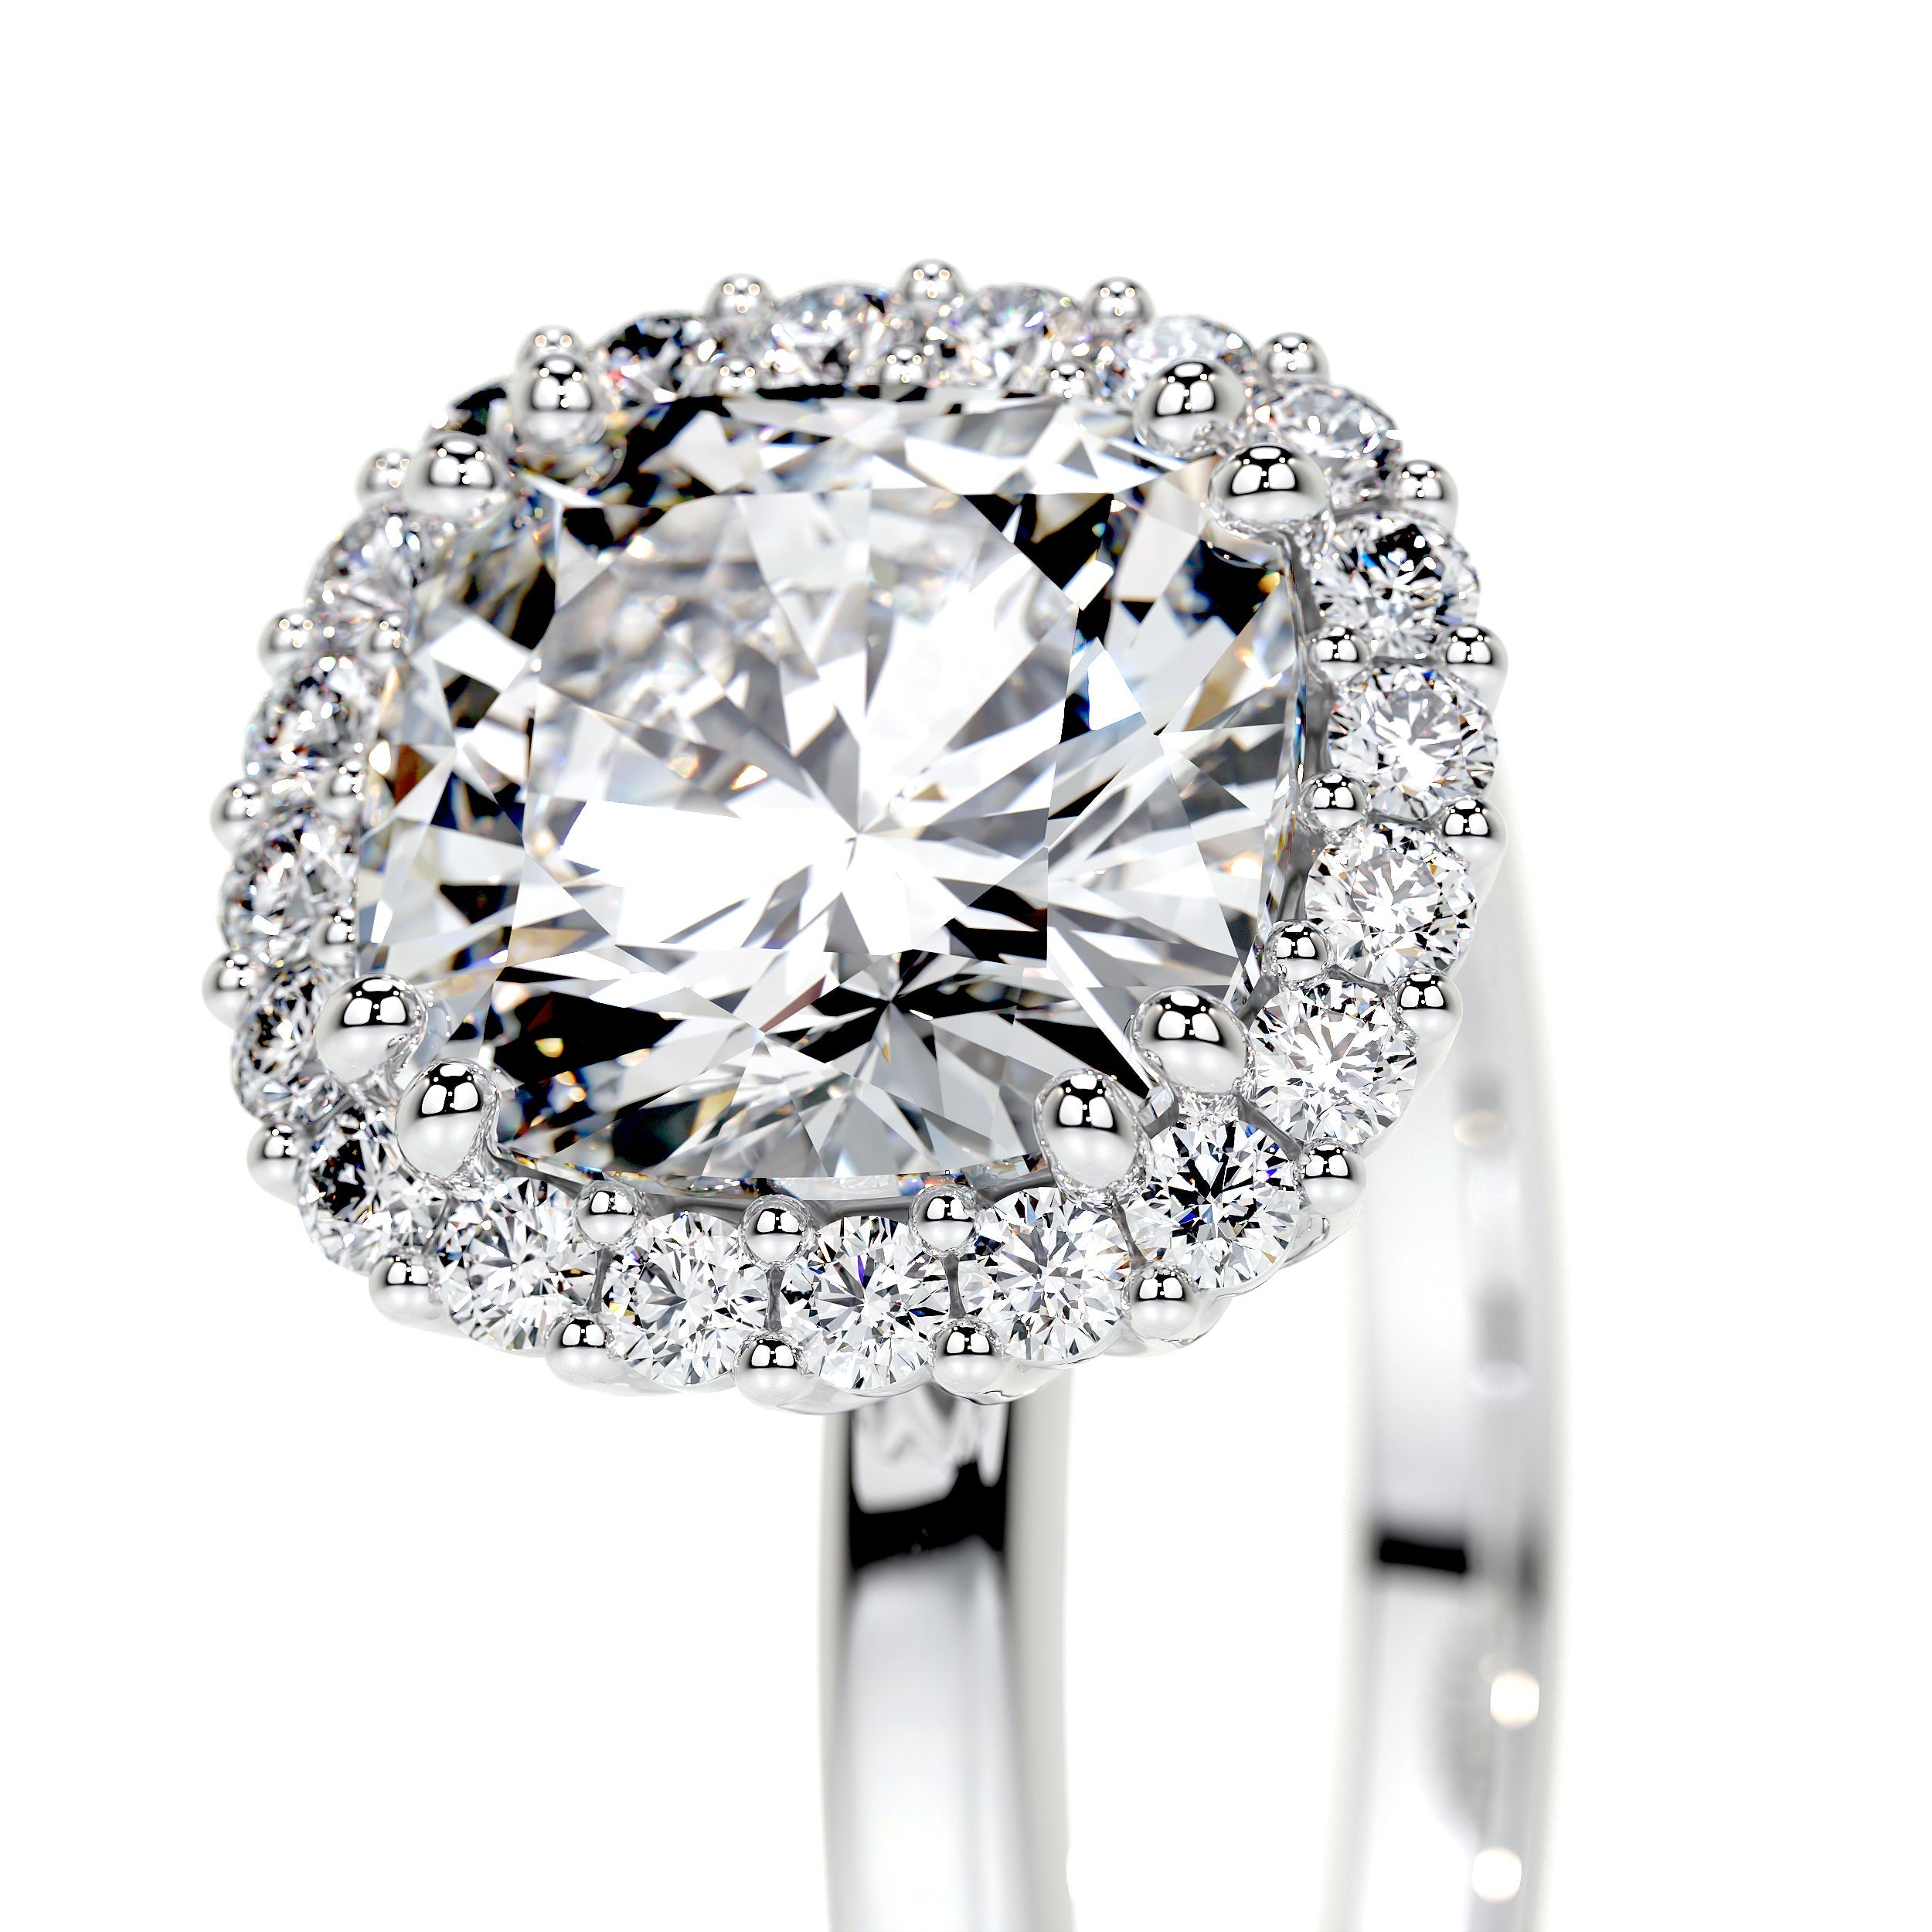 Bailey Lab Grown Diamond Ring   (2.25 Carat) -18K White Gold